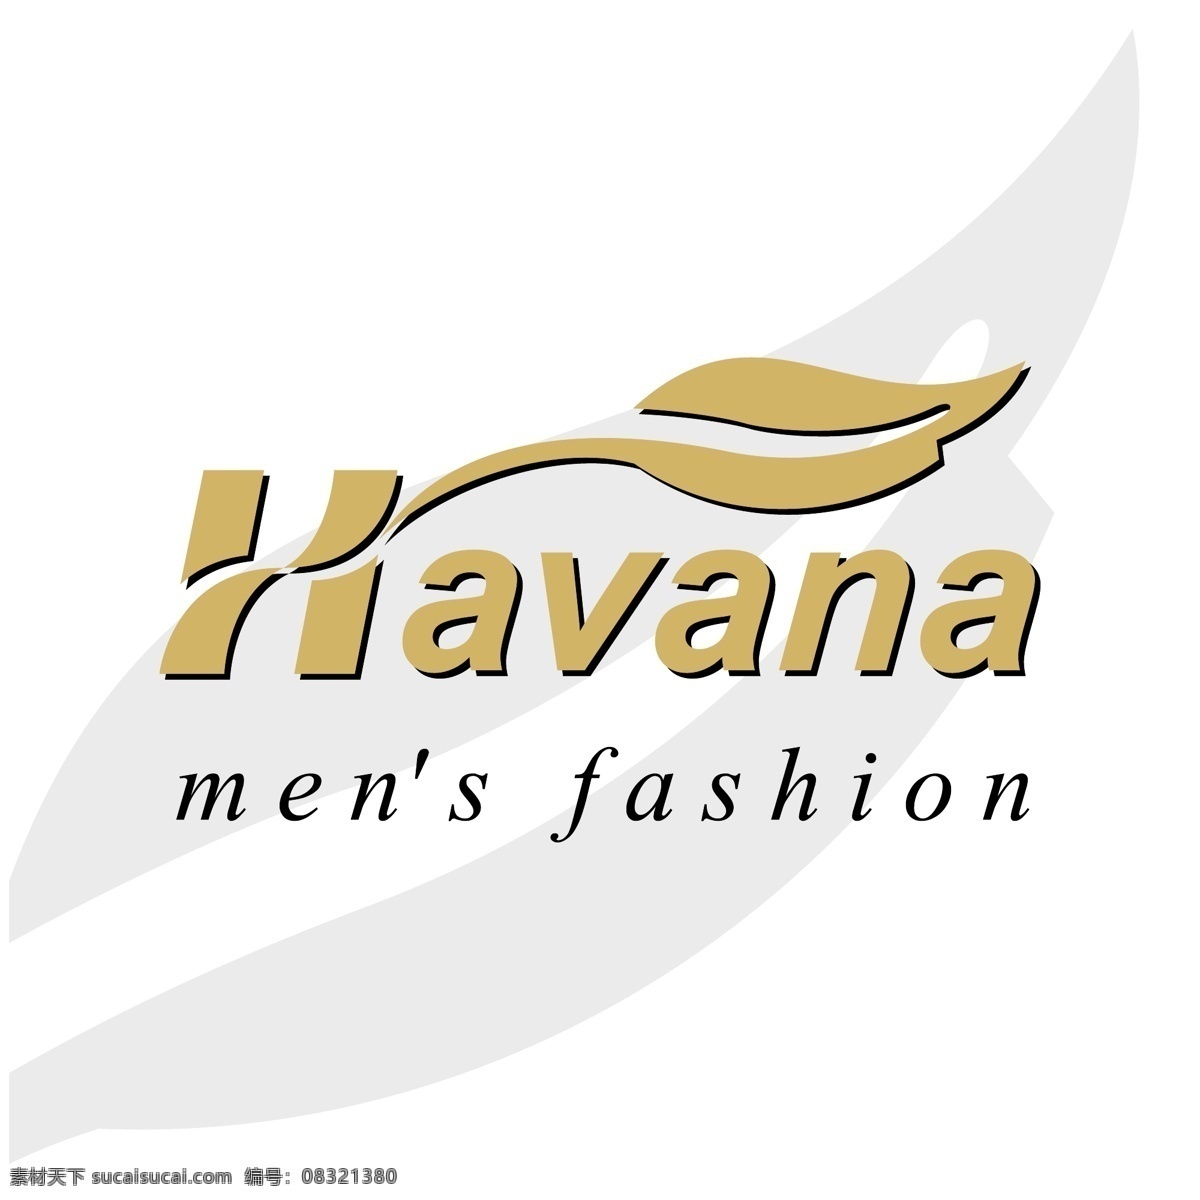 哈瓦那 矢量标志下载 免费矢量标识 商标 品牌标识 标识 矢量 免费 品牌 公司 白色